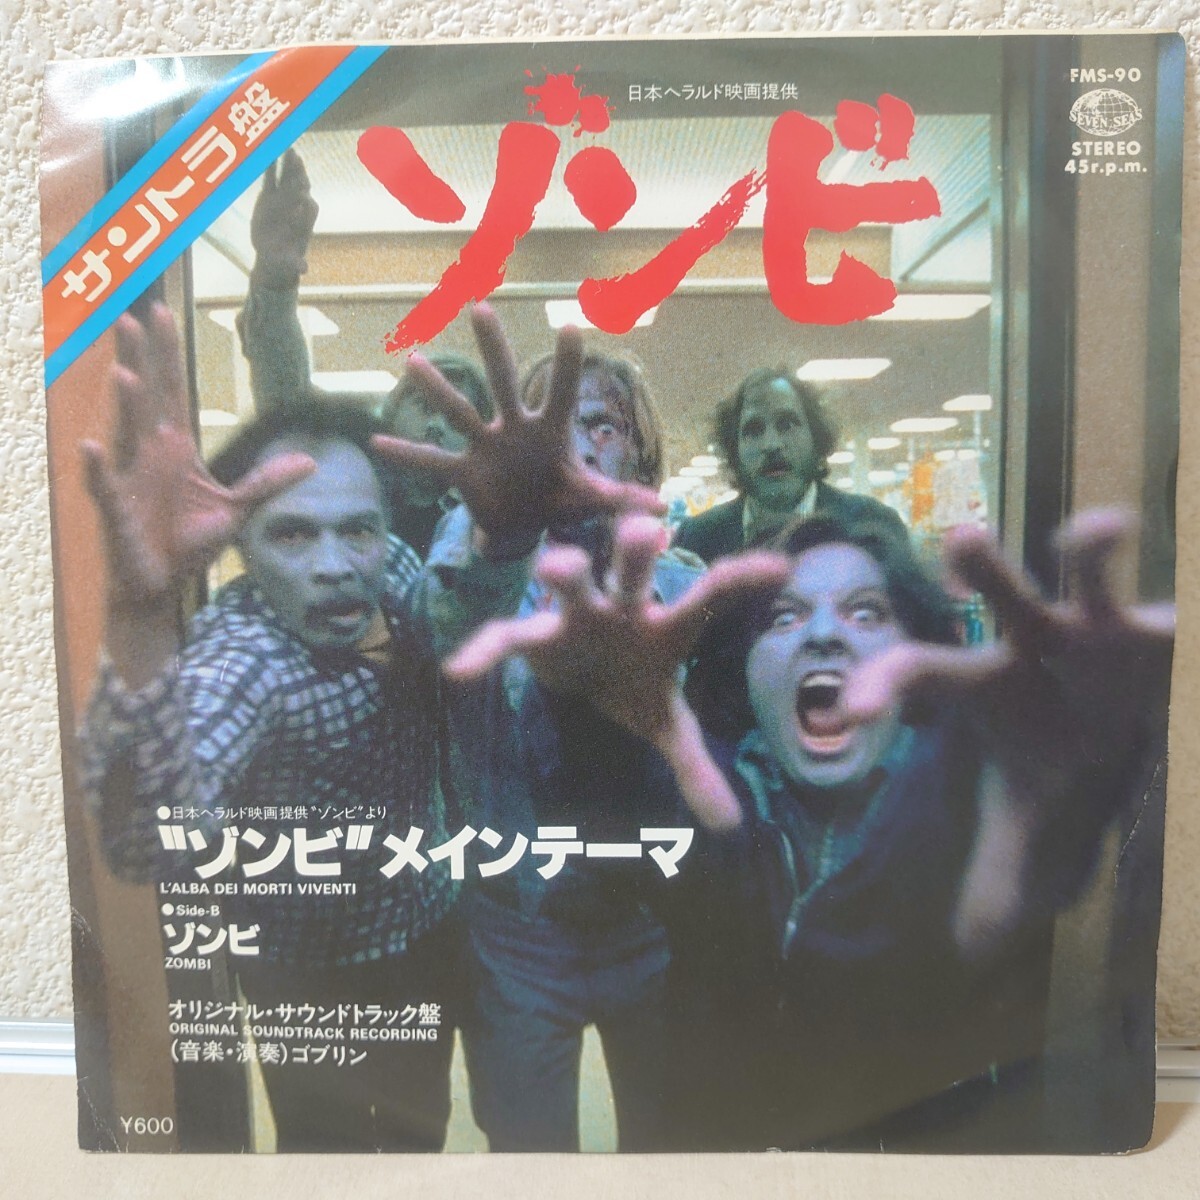 EP*go Brin /zombi*me Inte -ma[ soundtrack /FMS-90/1979 year ]